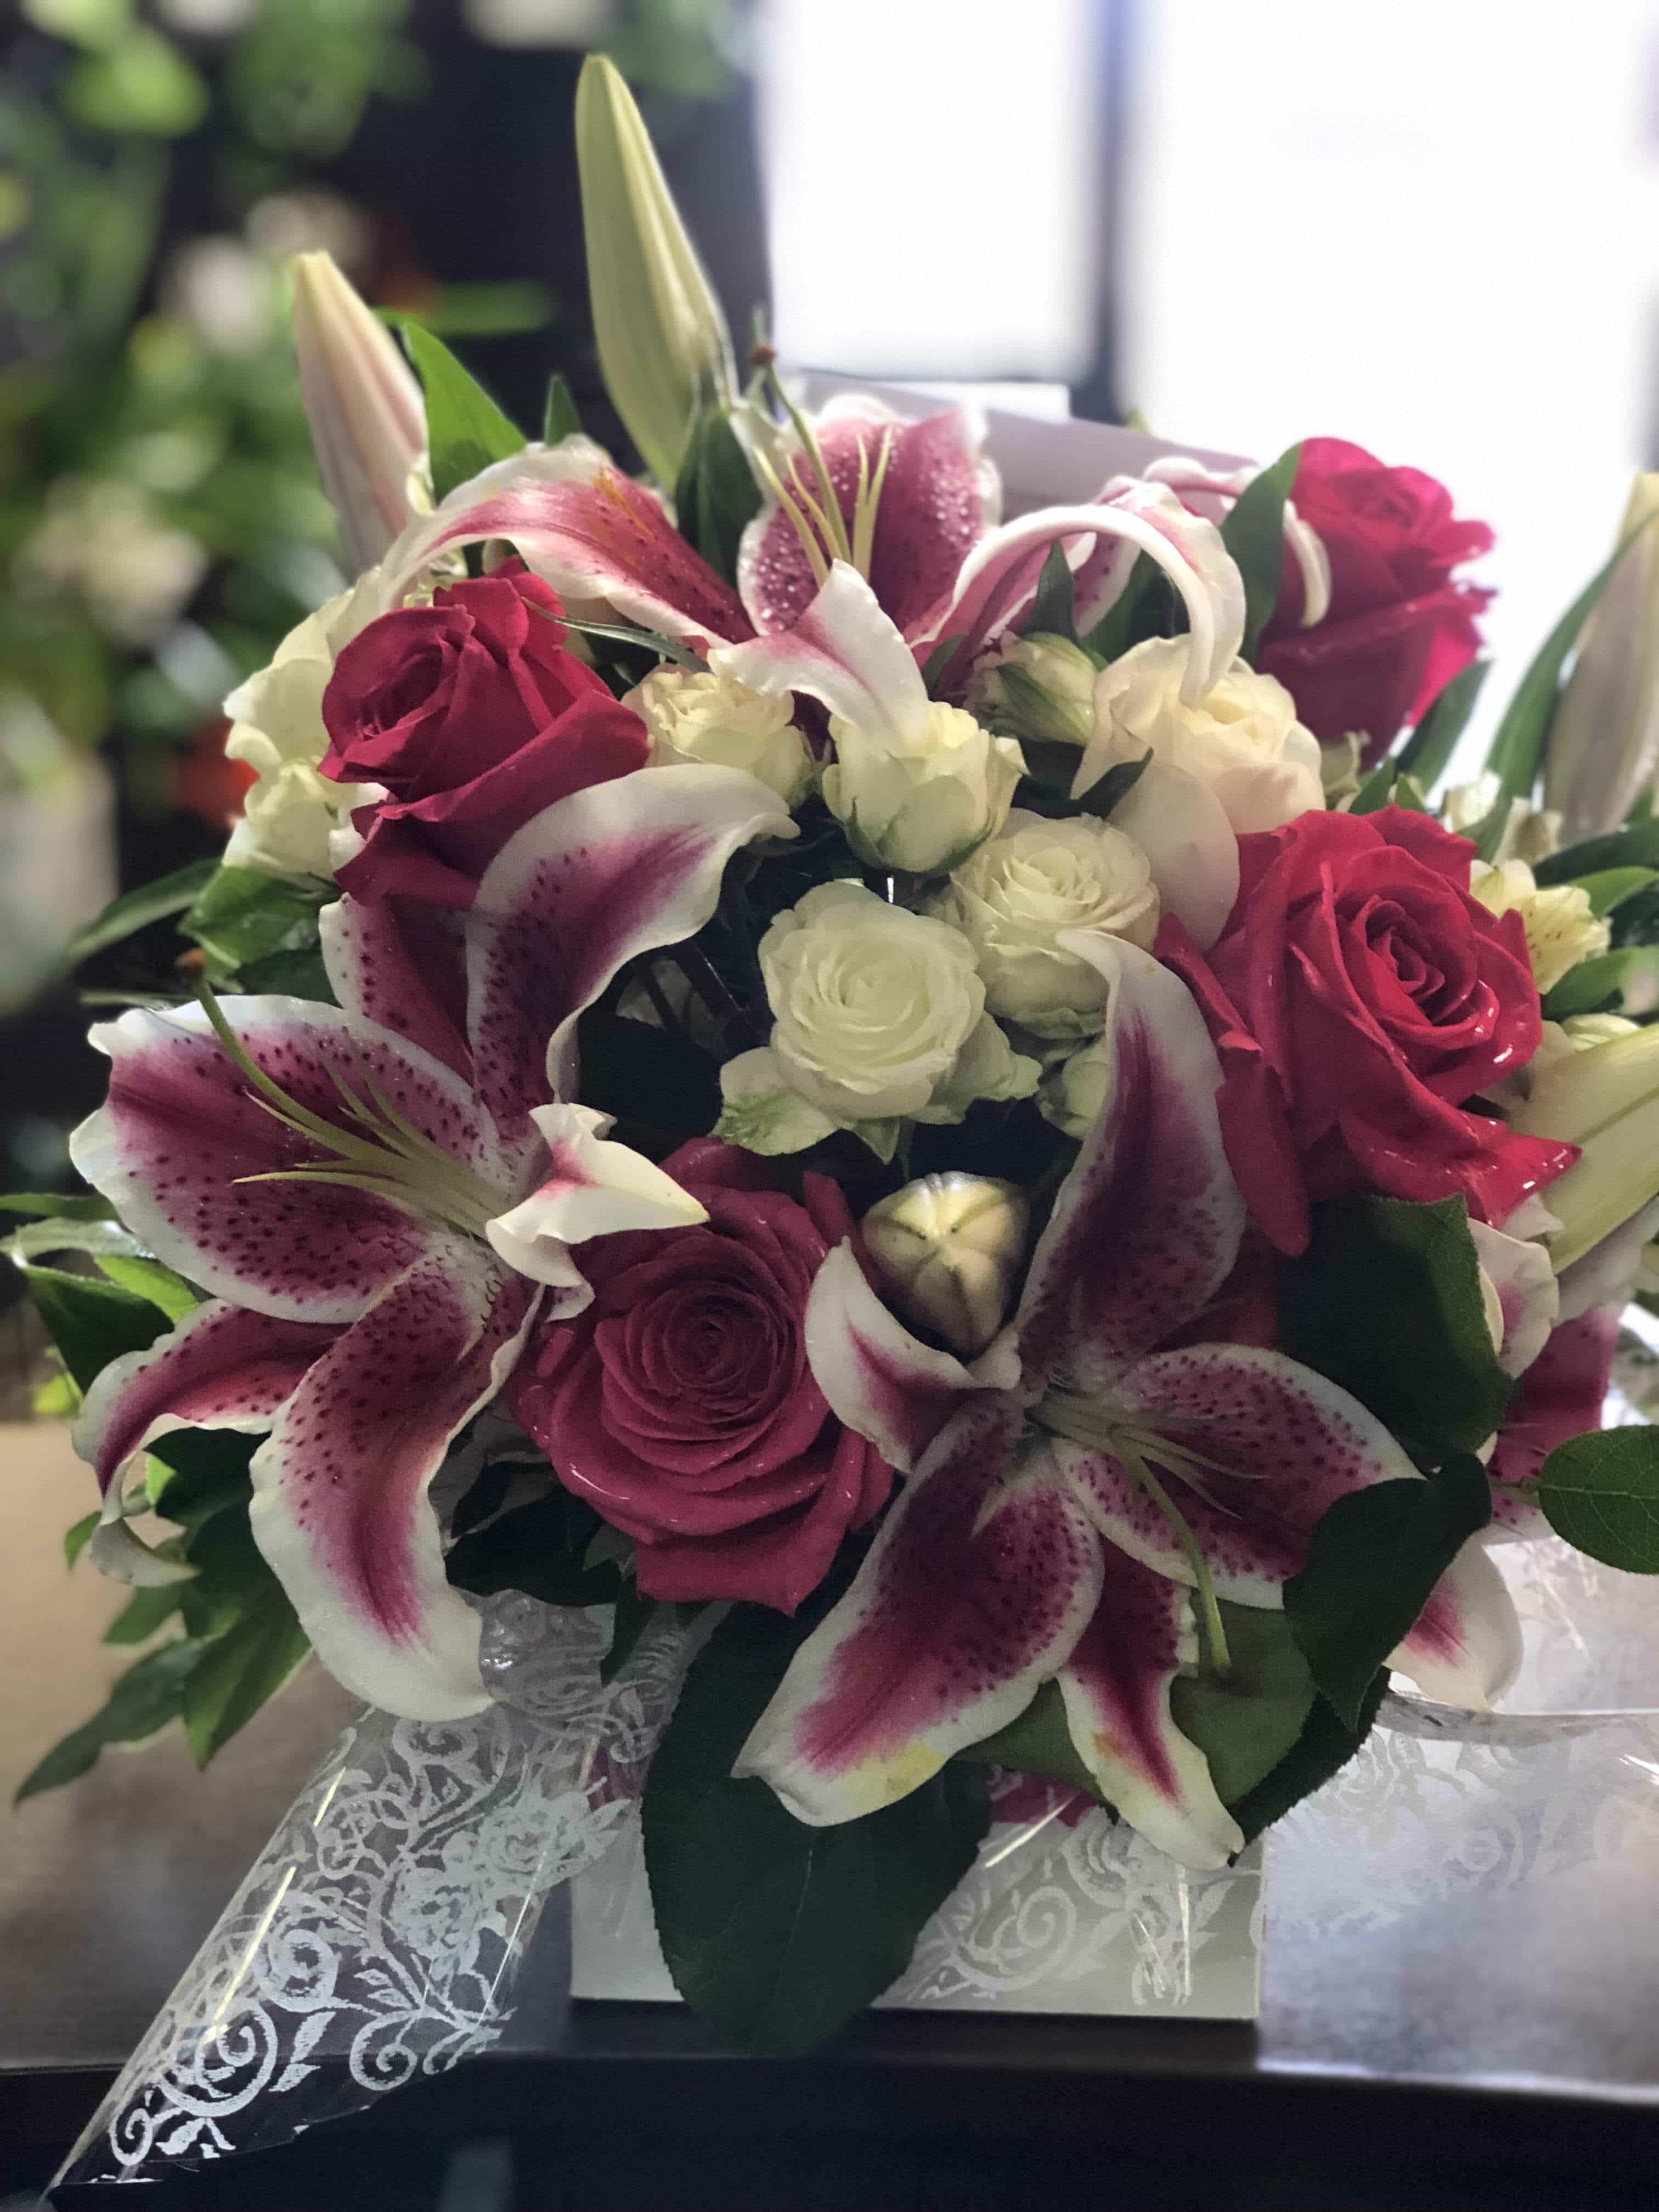 Infinity Floral Designs - Surprise, AZ, US, thanksgiving flower arrangements